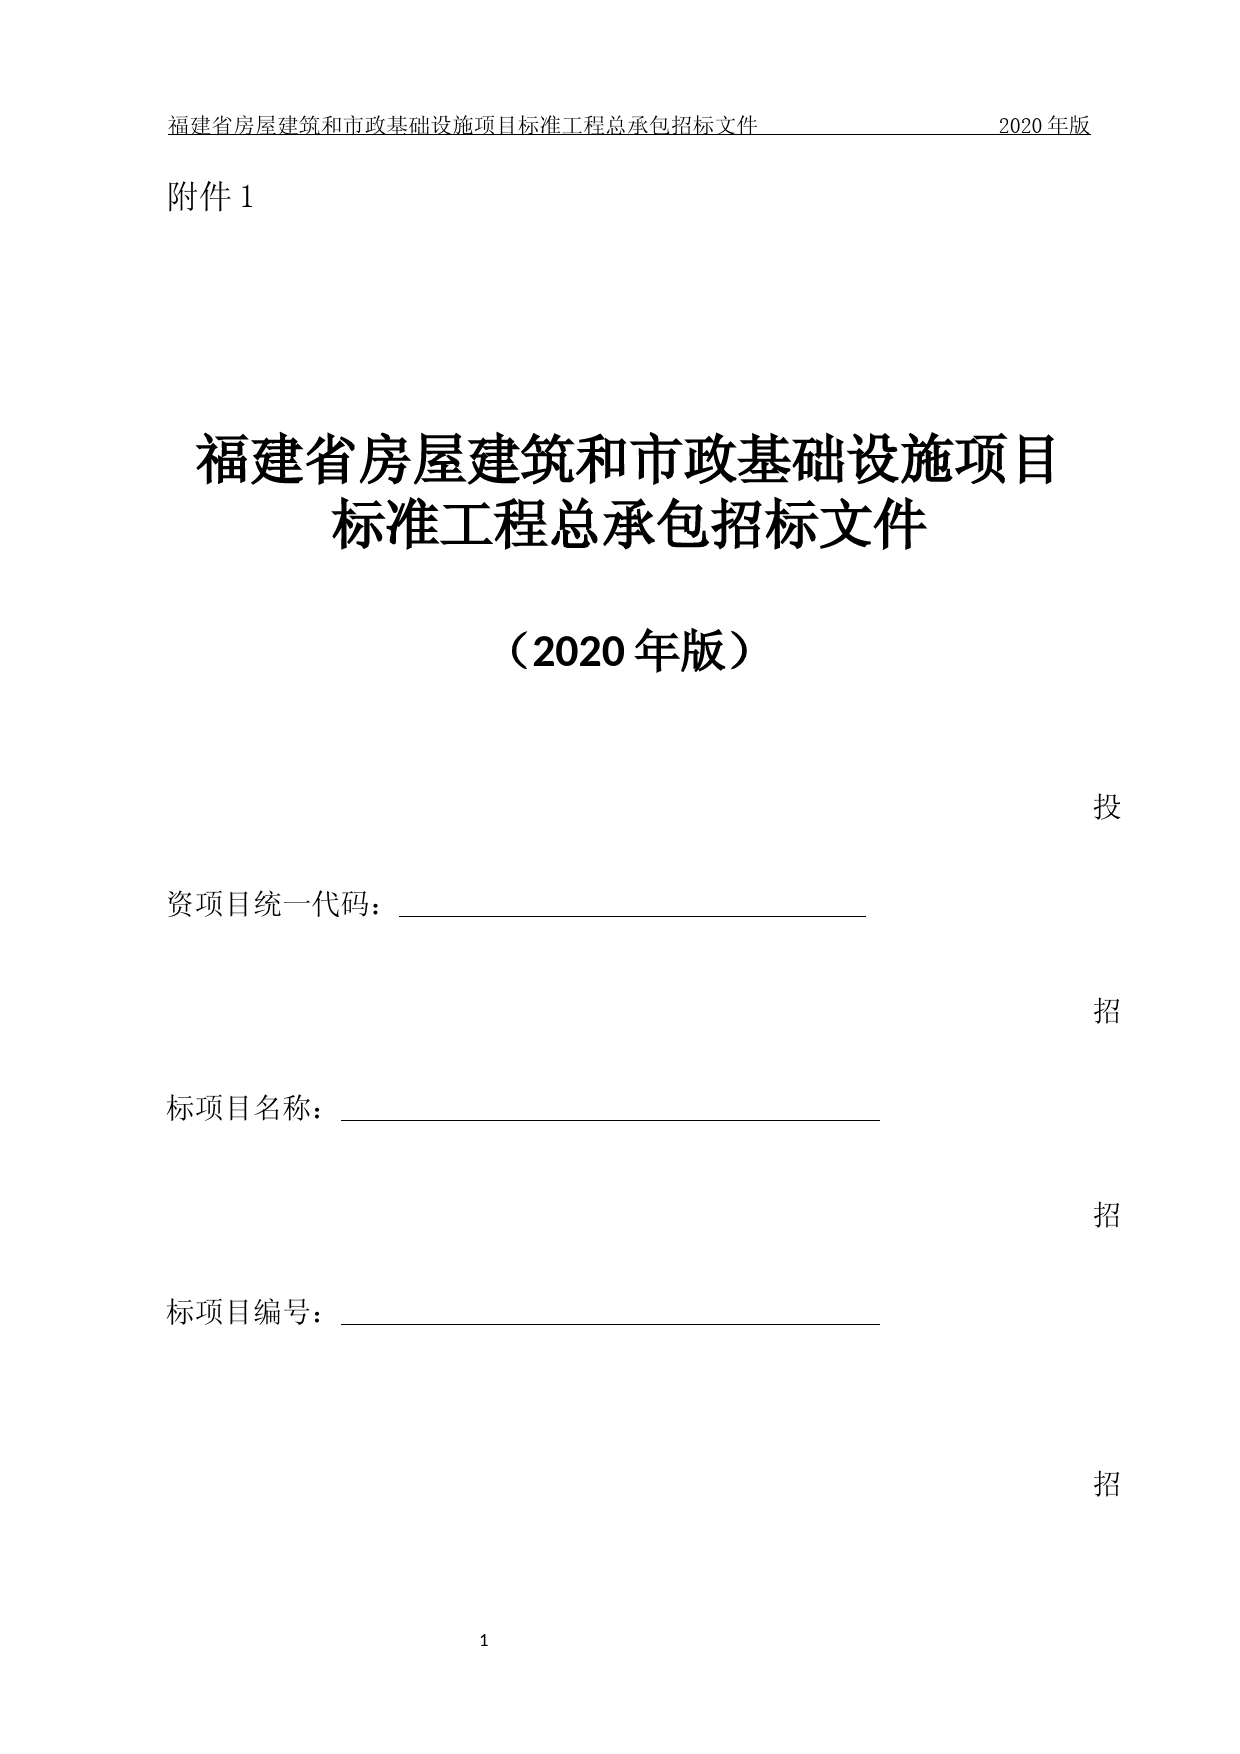 福建省房屋建筑和市政基础设施项目标准工程总承包招标文件(2020年版)